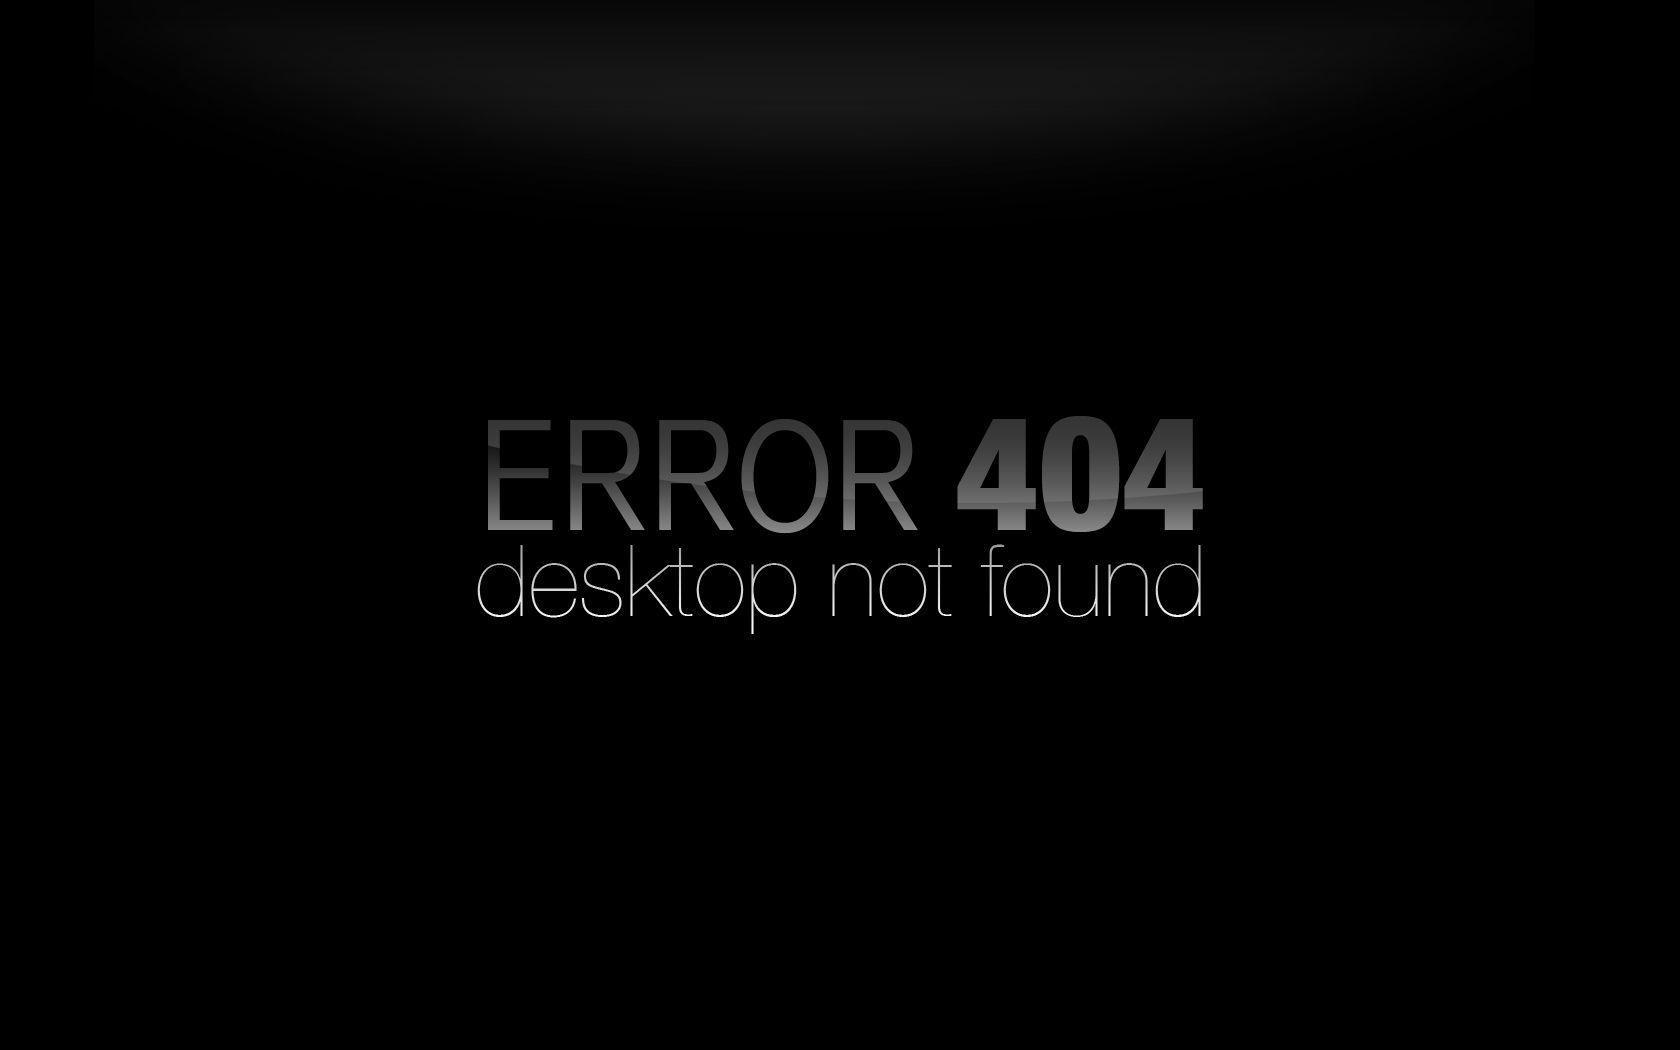 Download Error 404 Wallpapers 1680x1050